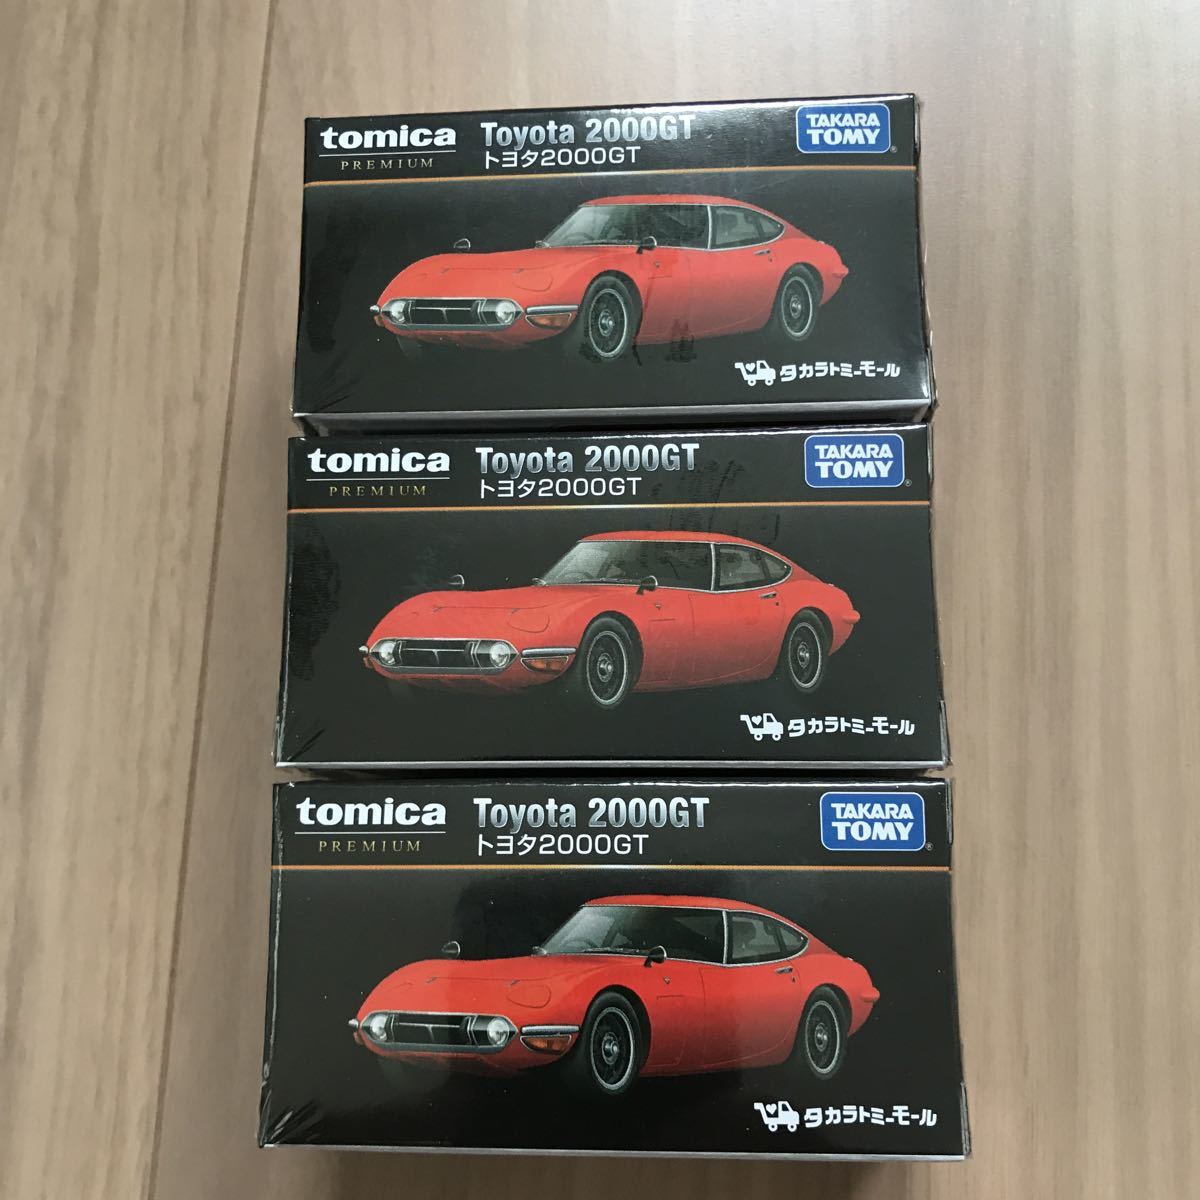  原文:トミカ 3台セット タカラトミーモール オリジナル トミカプレミアム トヨタ 2000GT 赤 